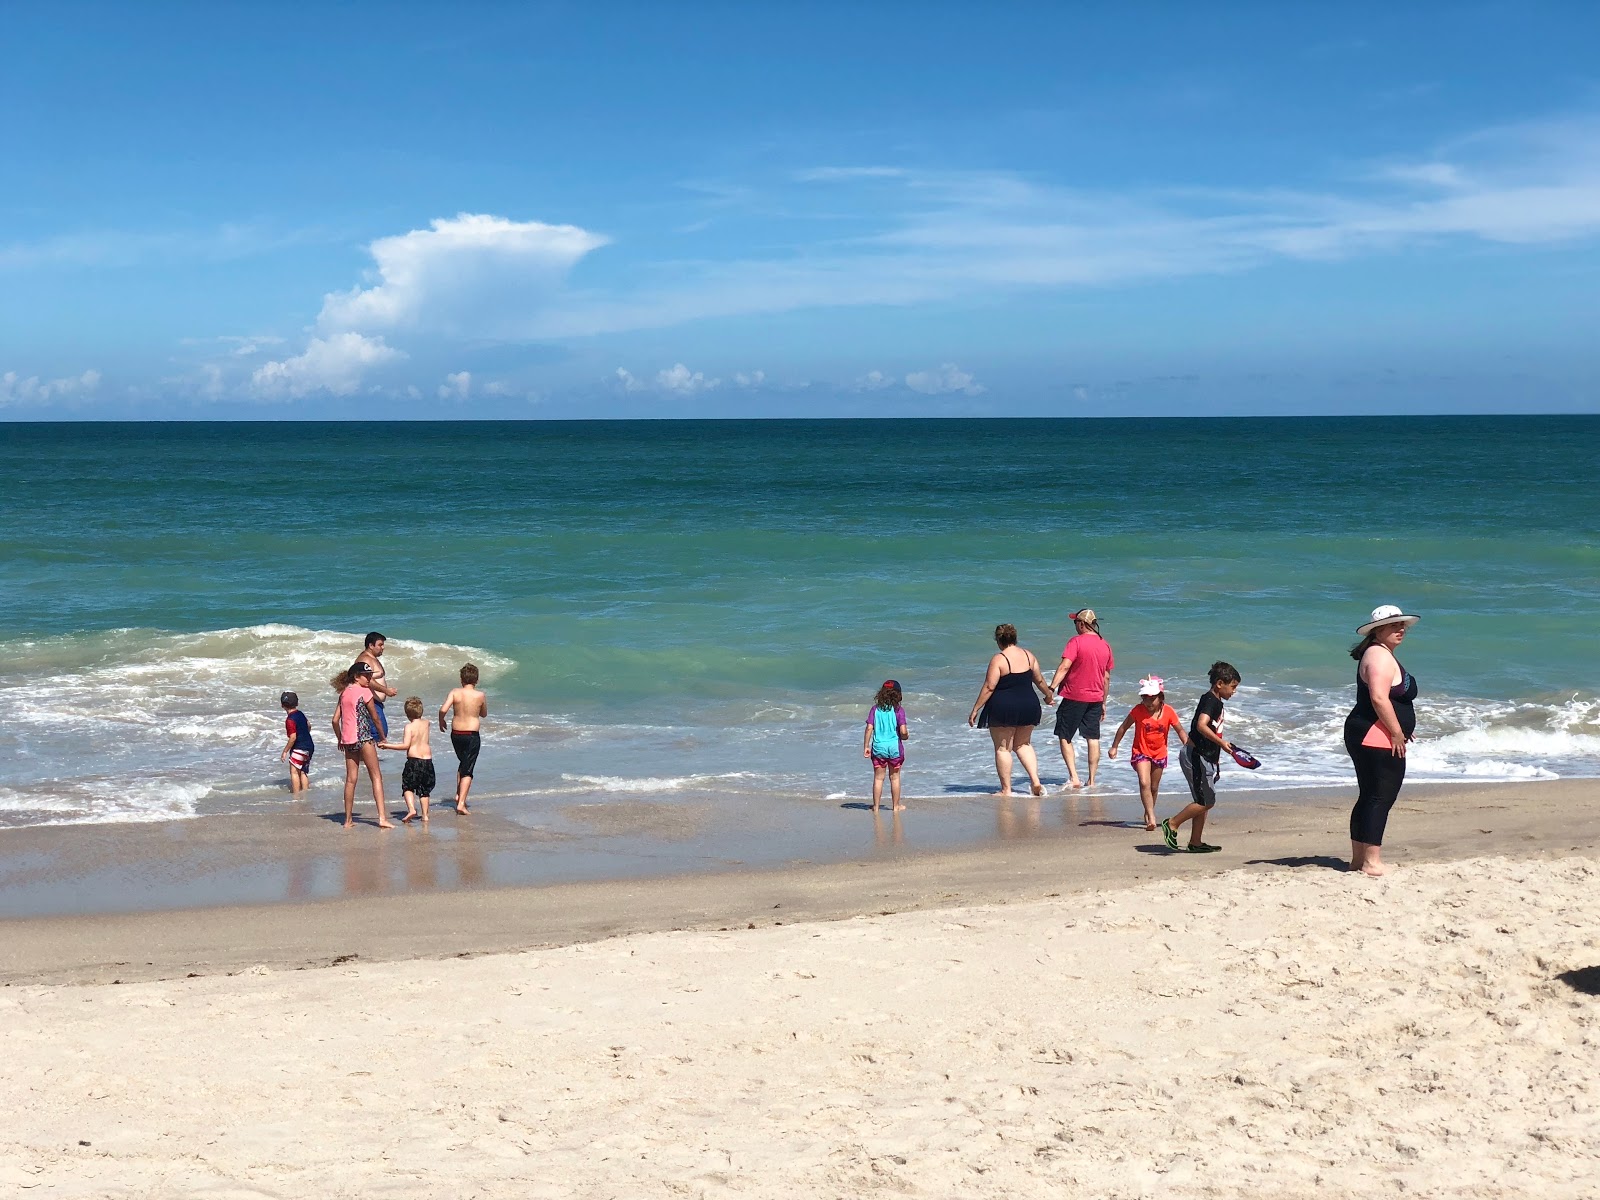 Fotografie cu Vero beach - locul popular printre cunoscătorii de relaxare